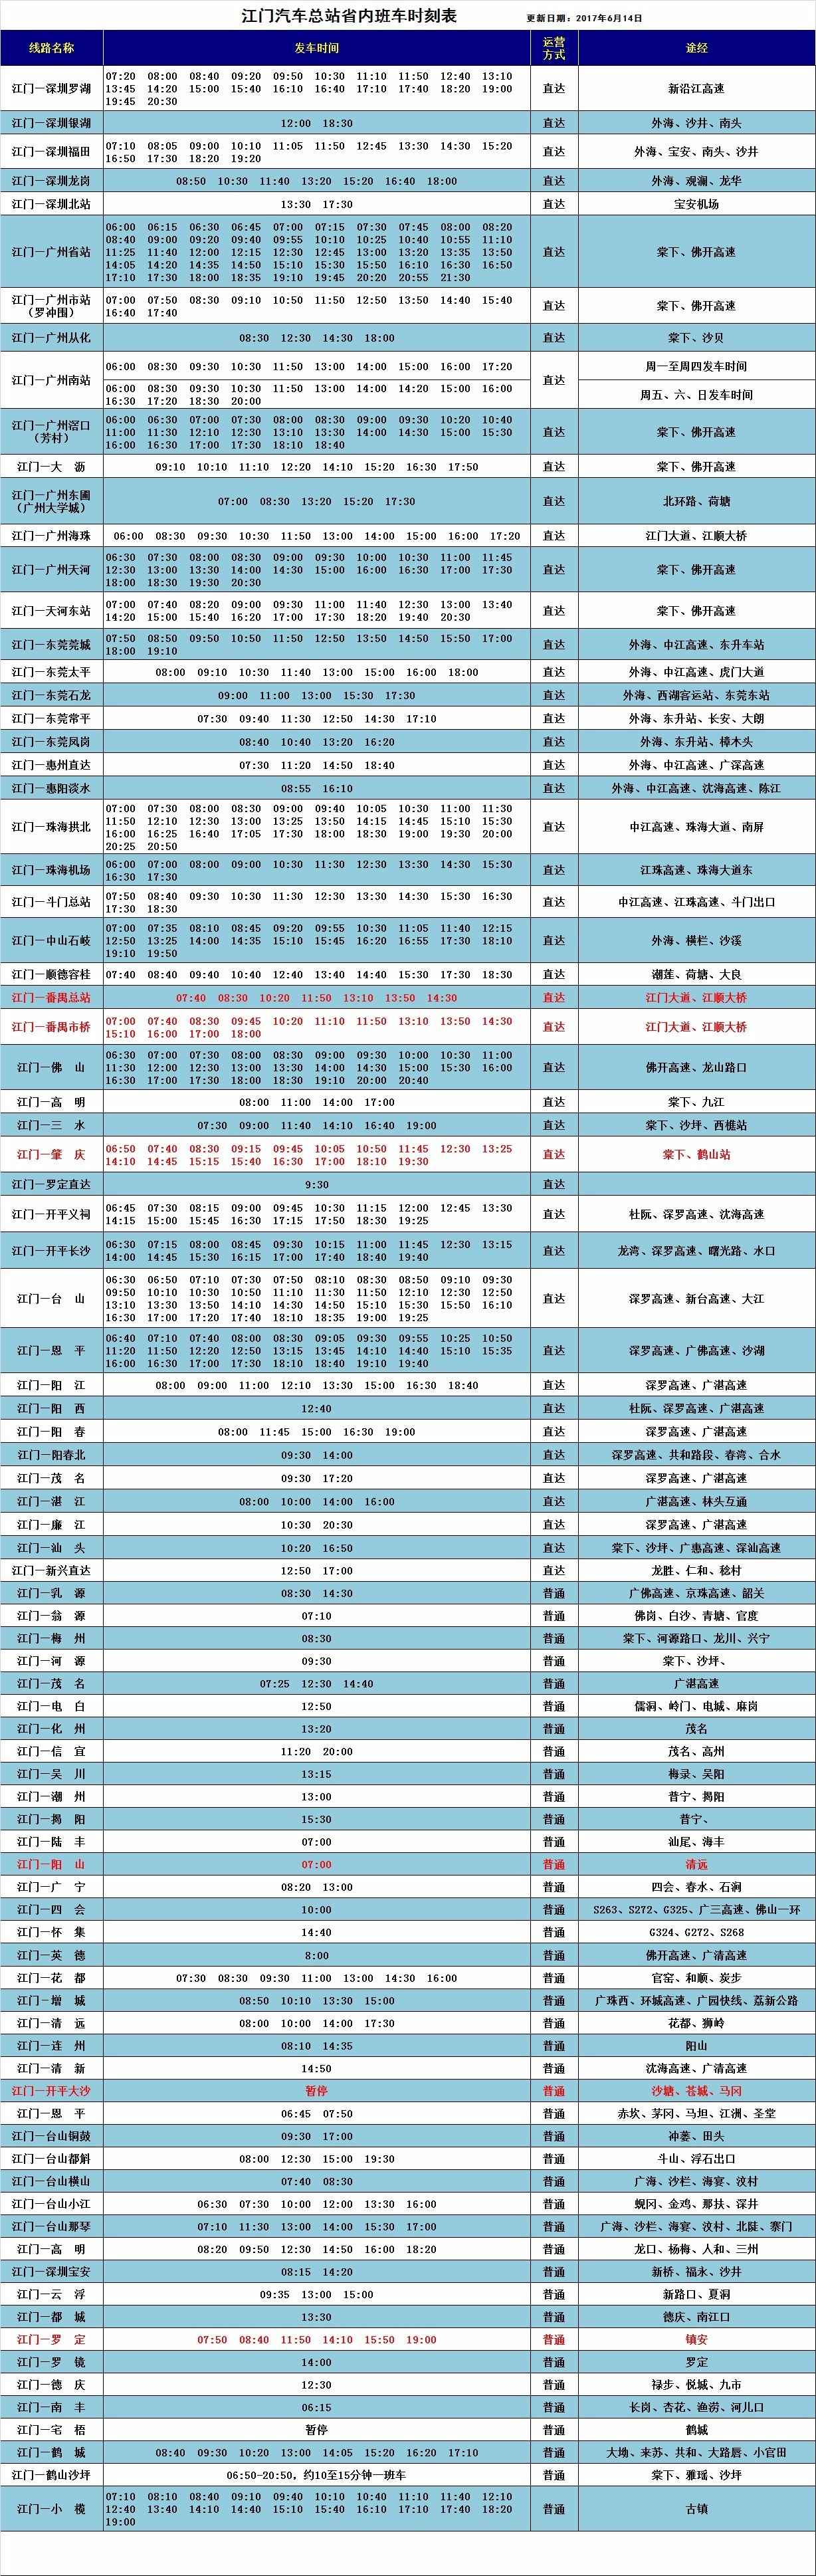 班车时刻表(更新日期:2017年6月14日),江门